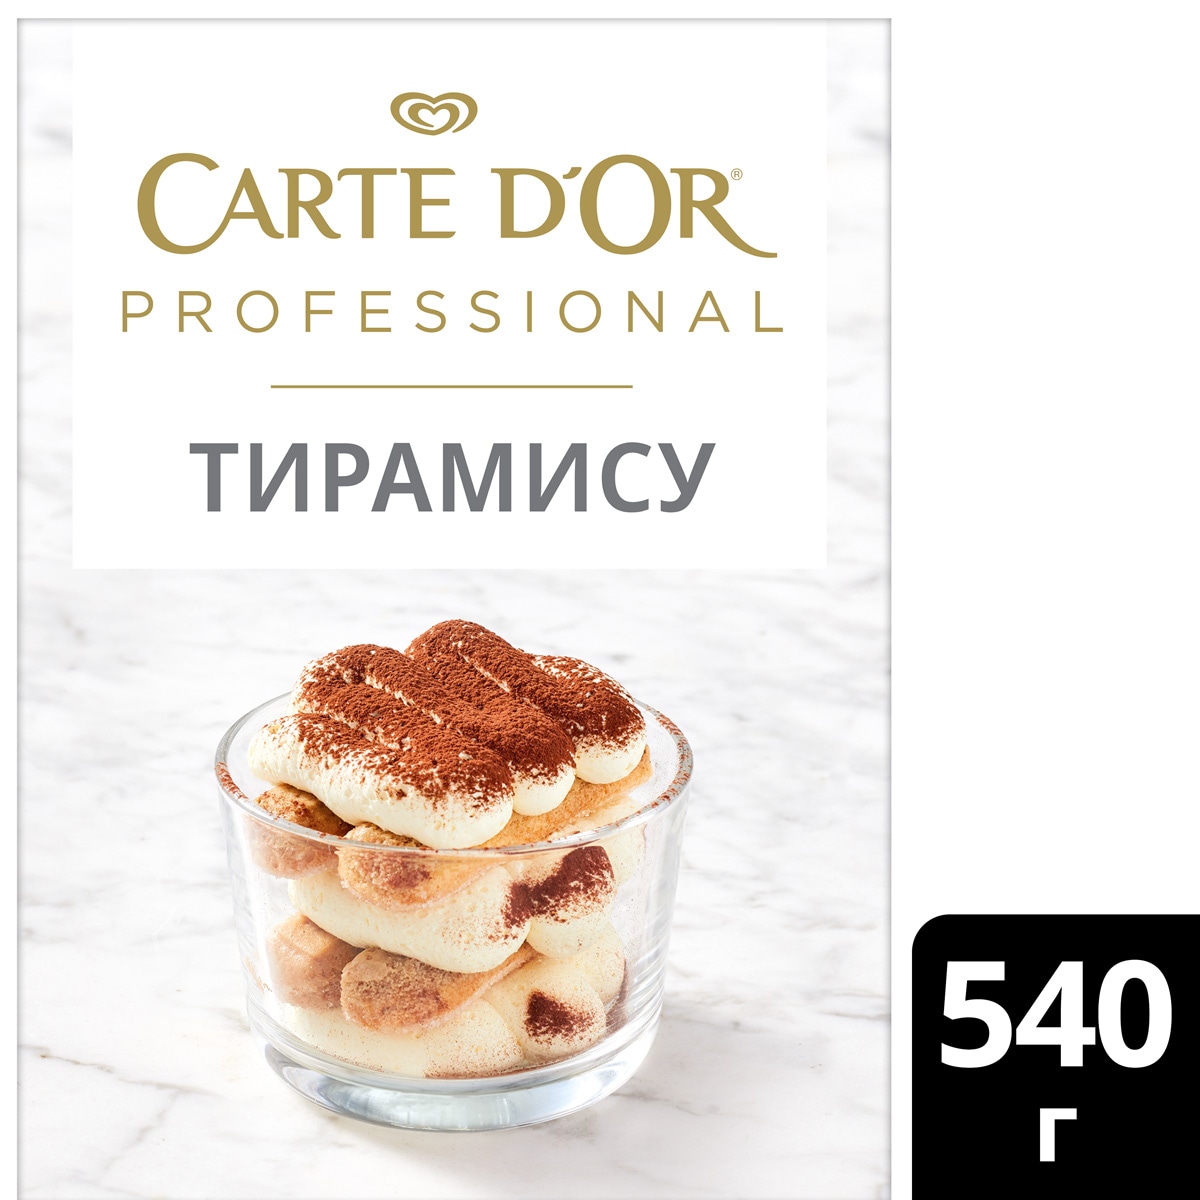 CARTE D'OR PROFESSIONAL Десерт Тирамису Сухая смесь (540 г) - Профессиональные десерты Carte D'Or Professional позволяют готовить аутентичные европейские десерты быстро и просто.